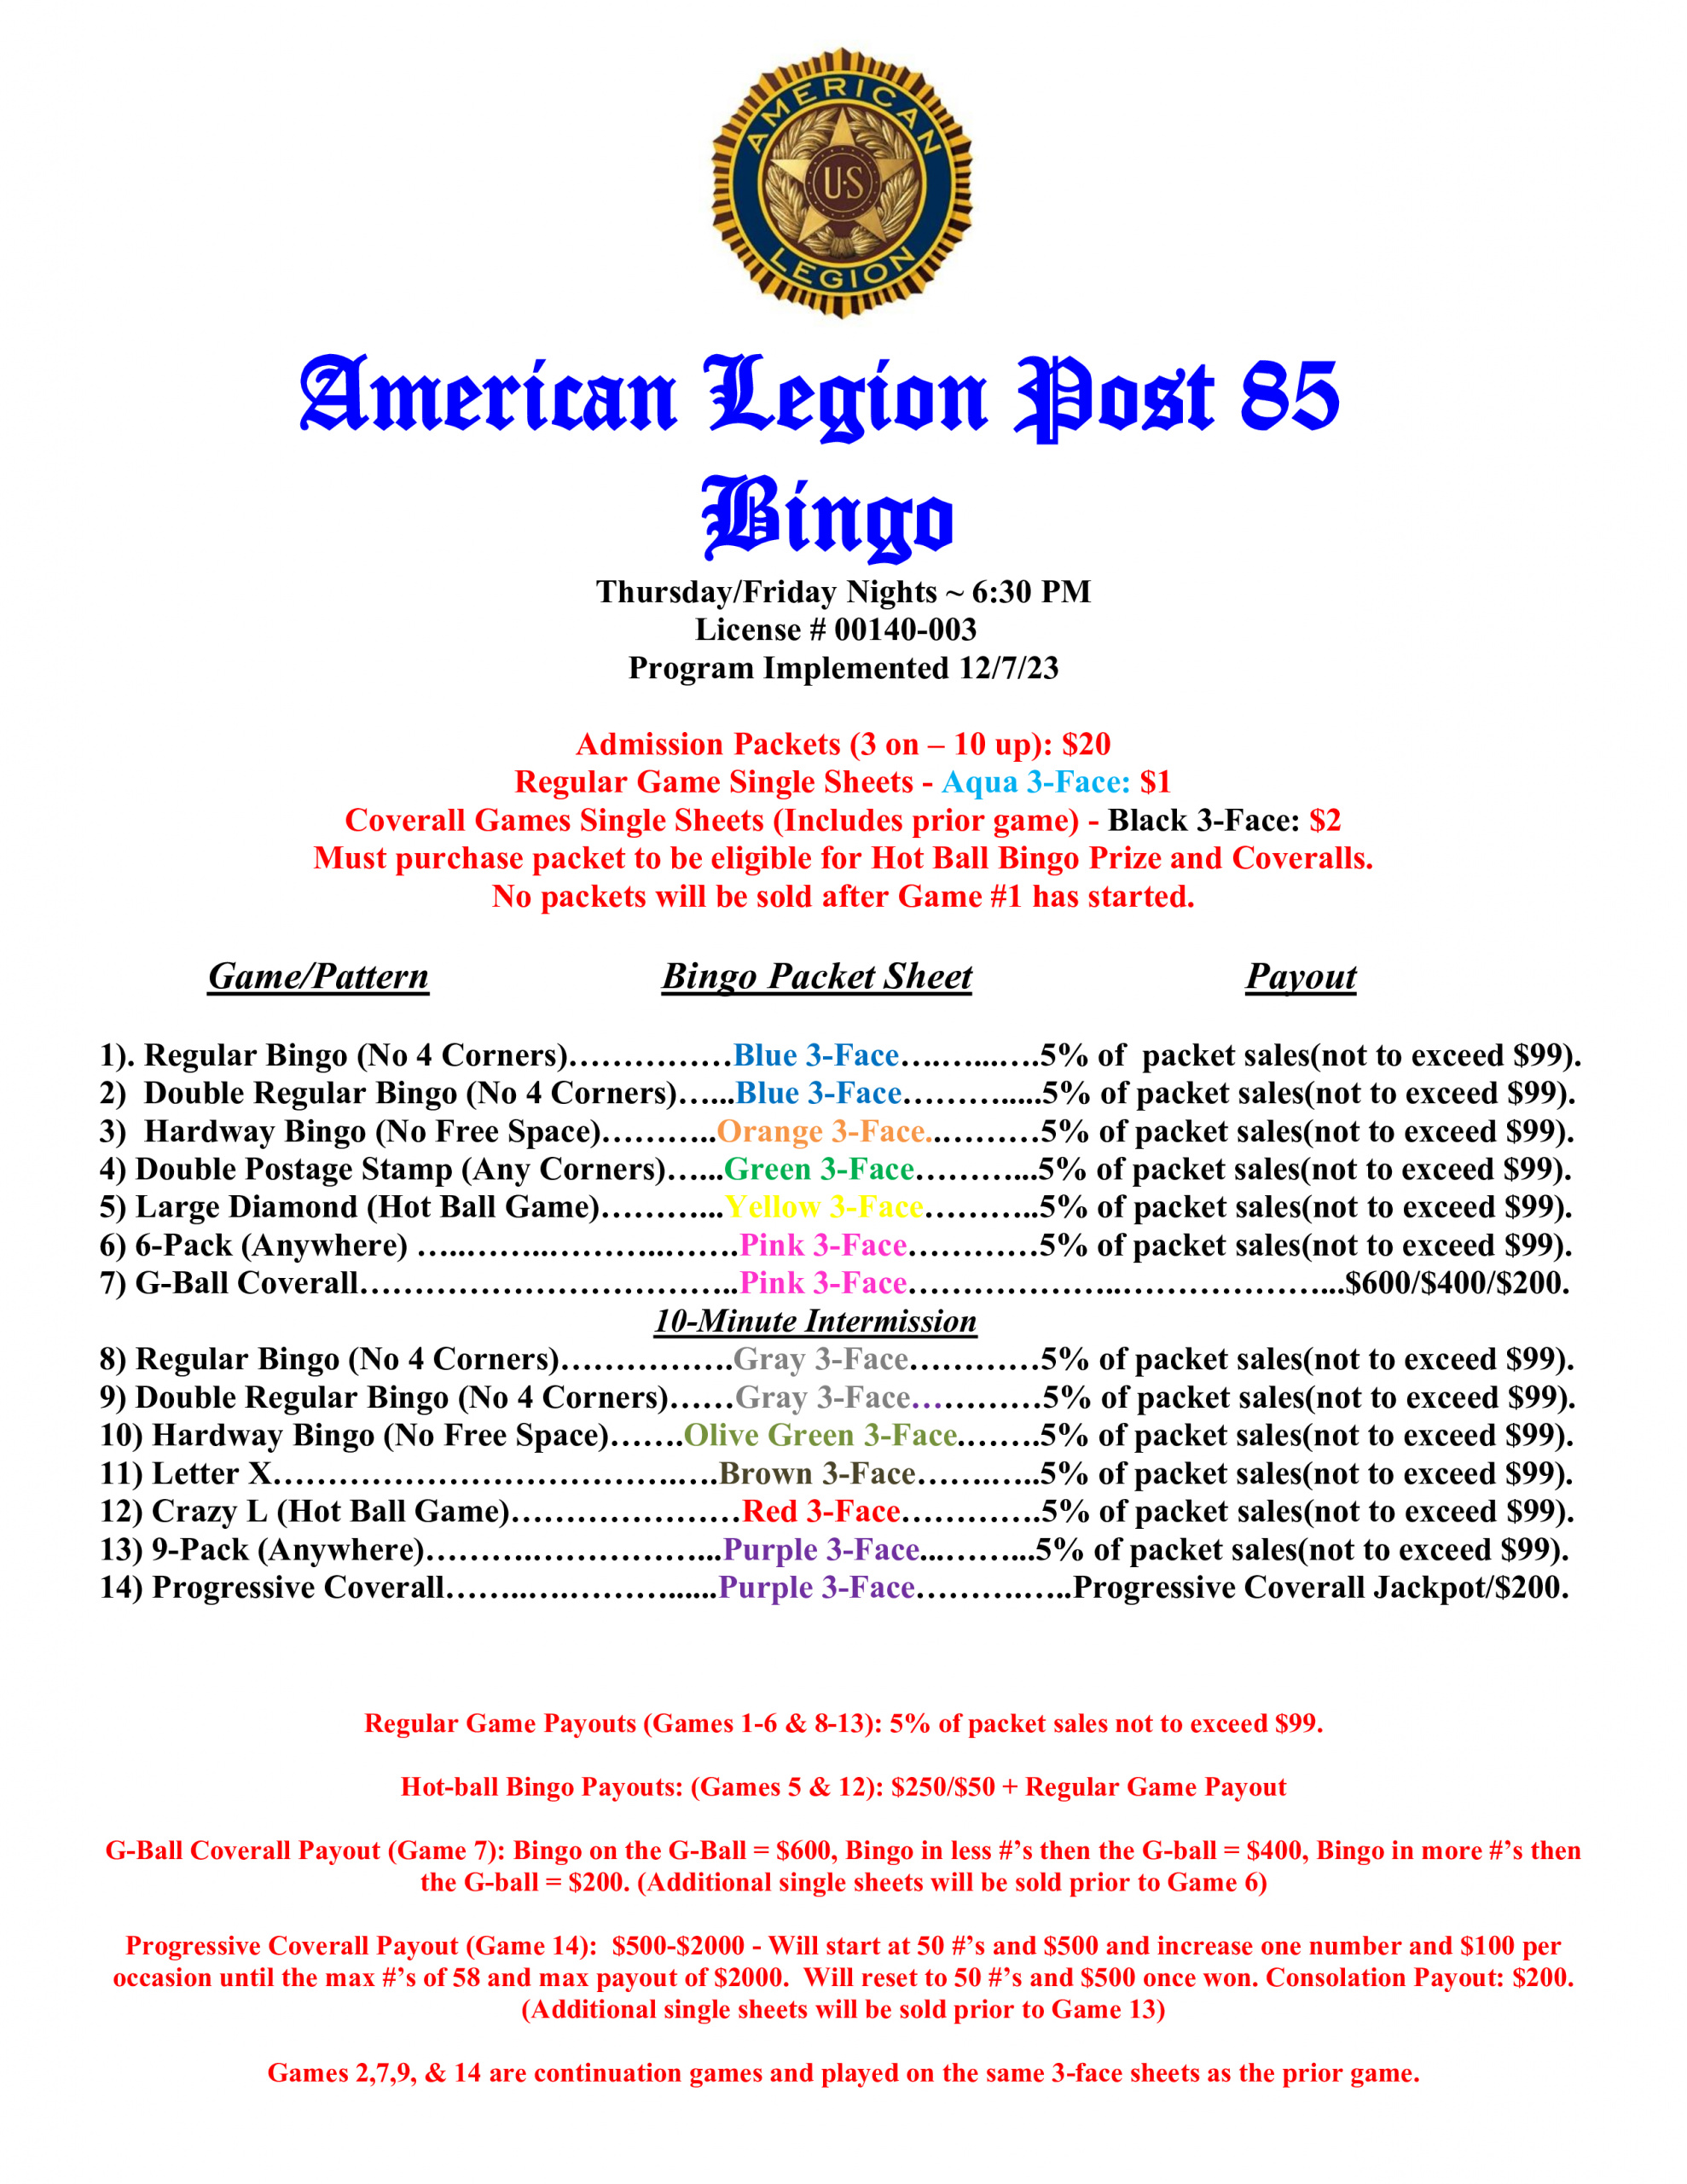 North Branch American Legion Bingo Information